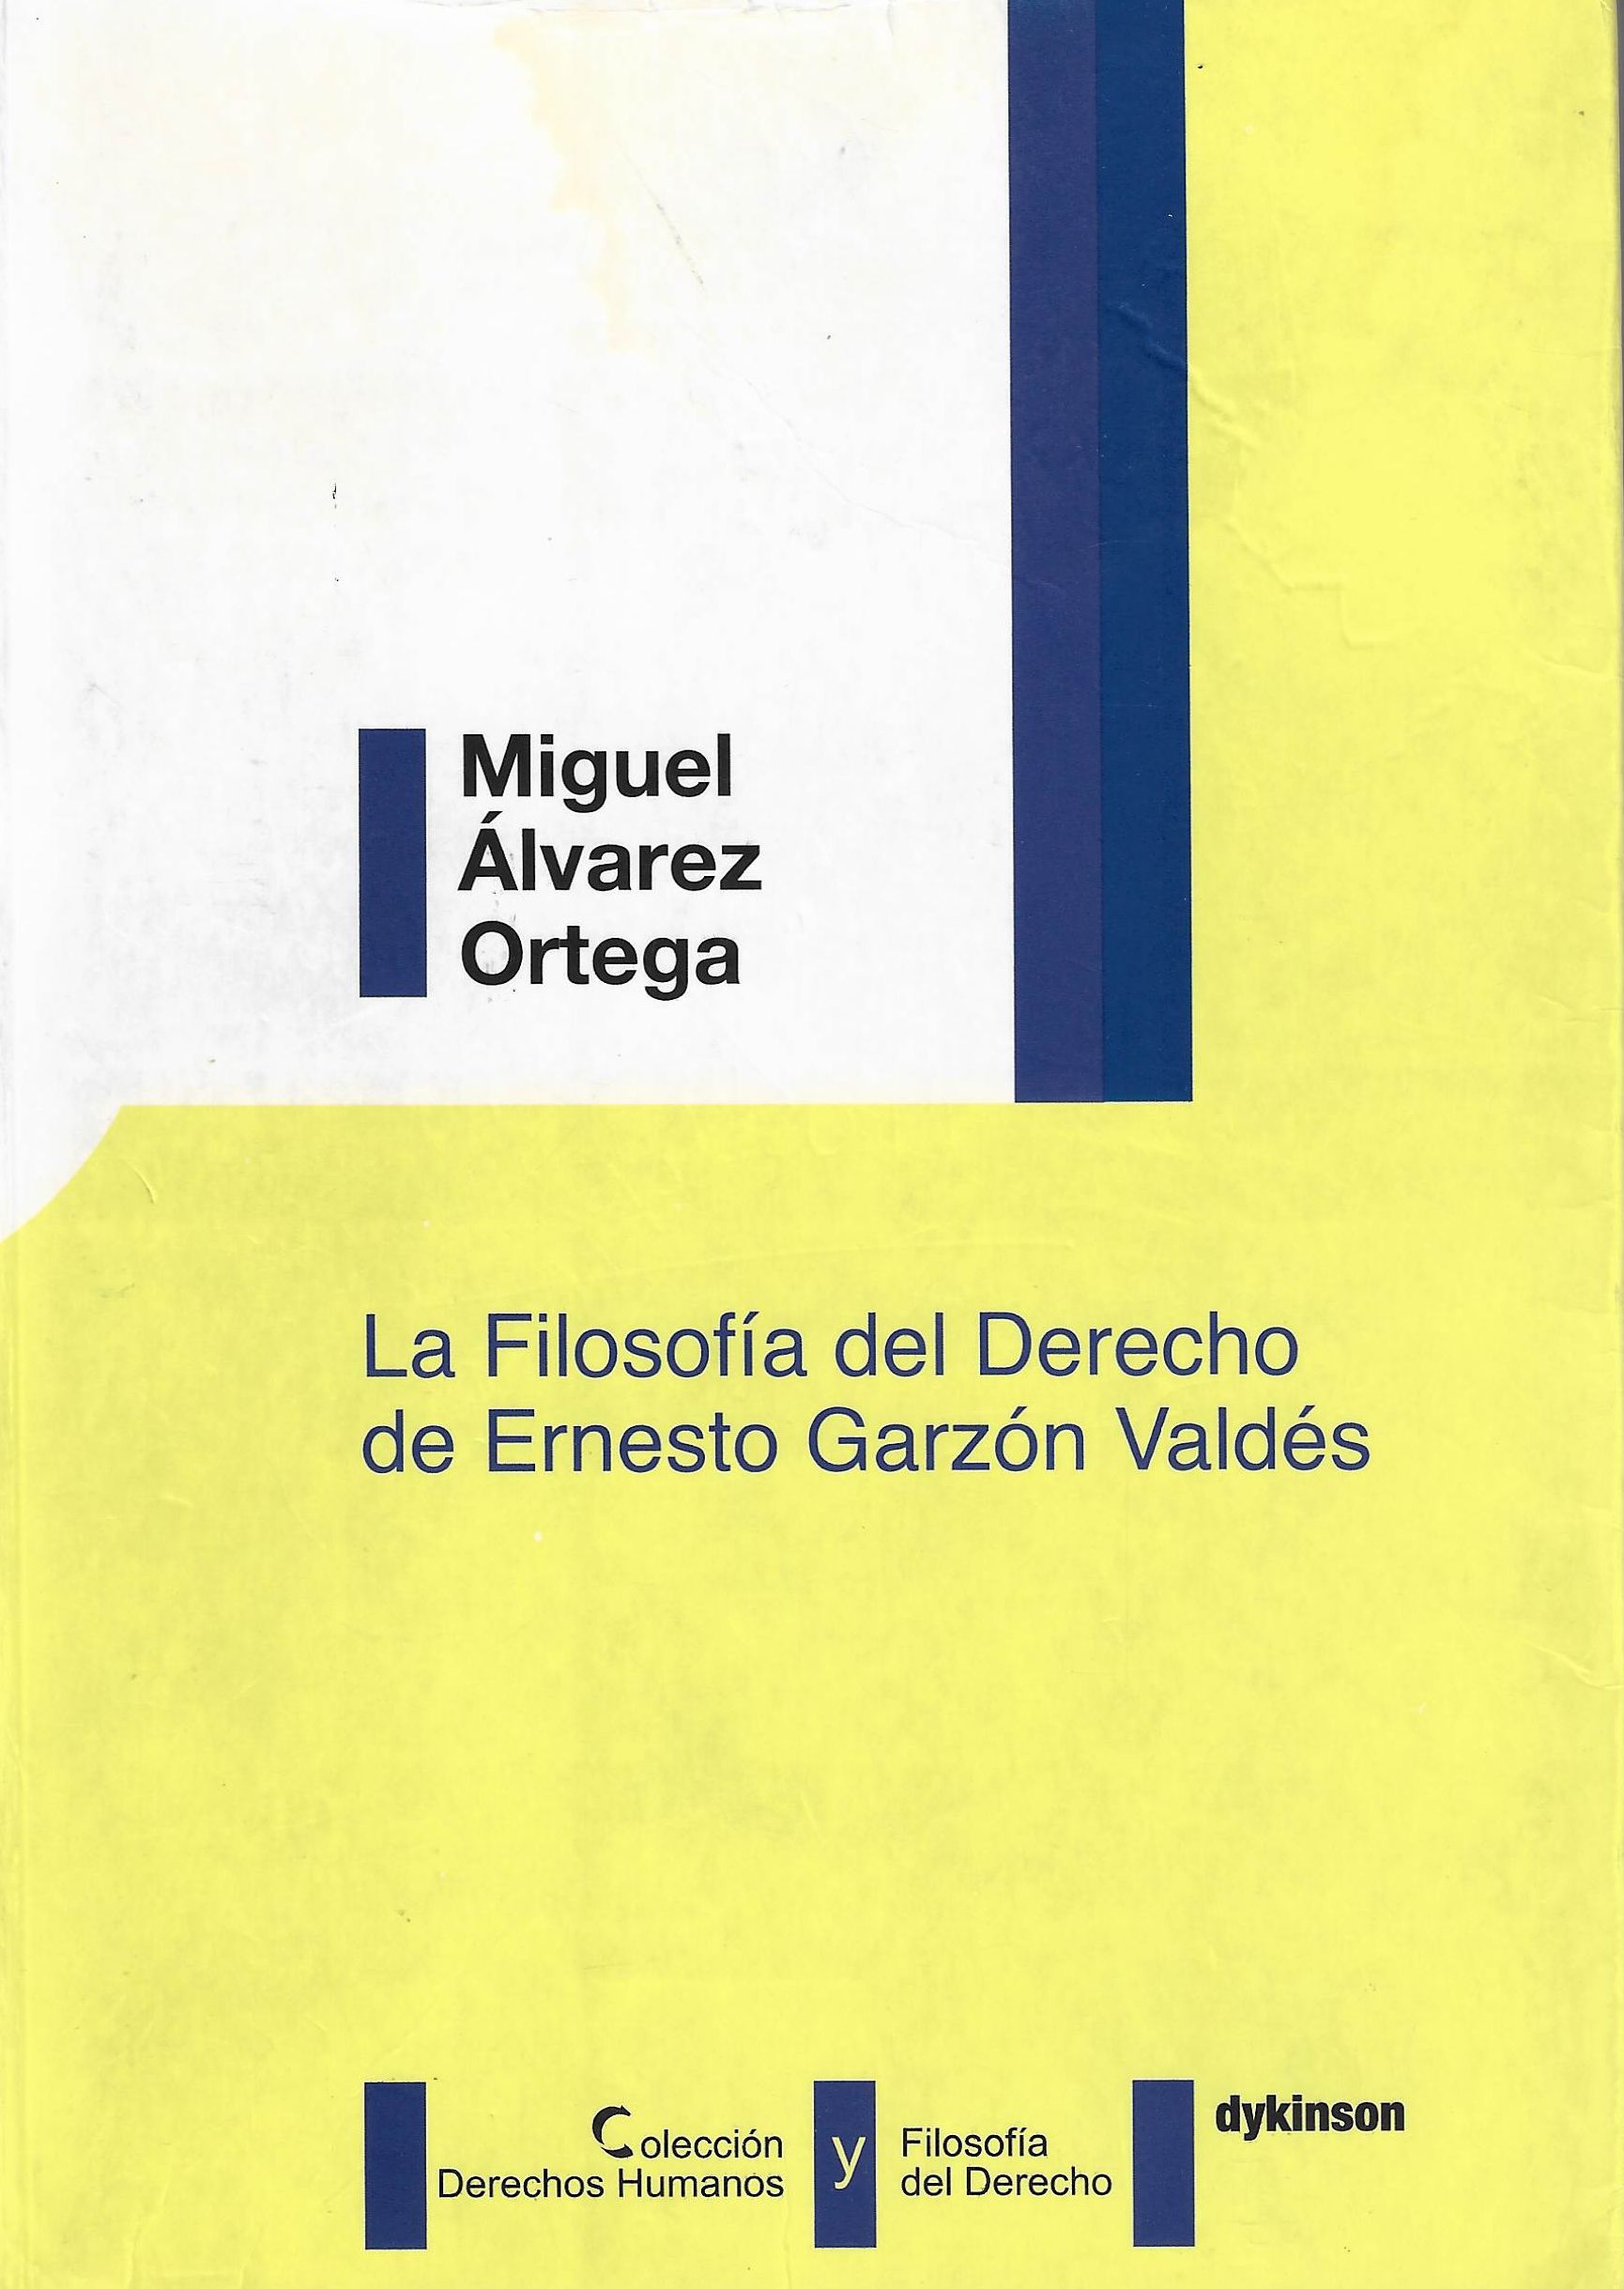 Imagen de portada del libro La filosofía del derecho de Ernesto Garzón Valdés